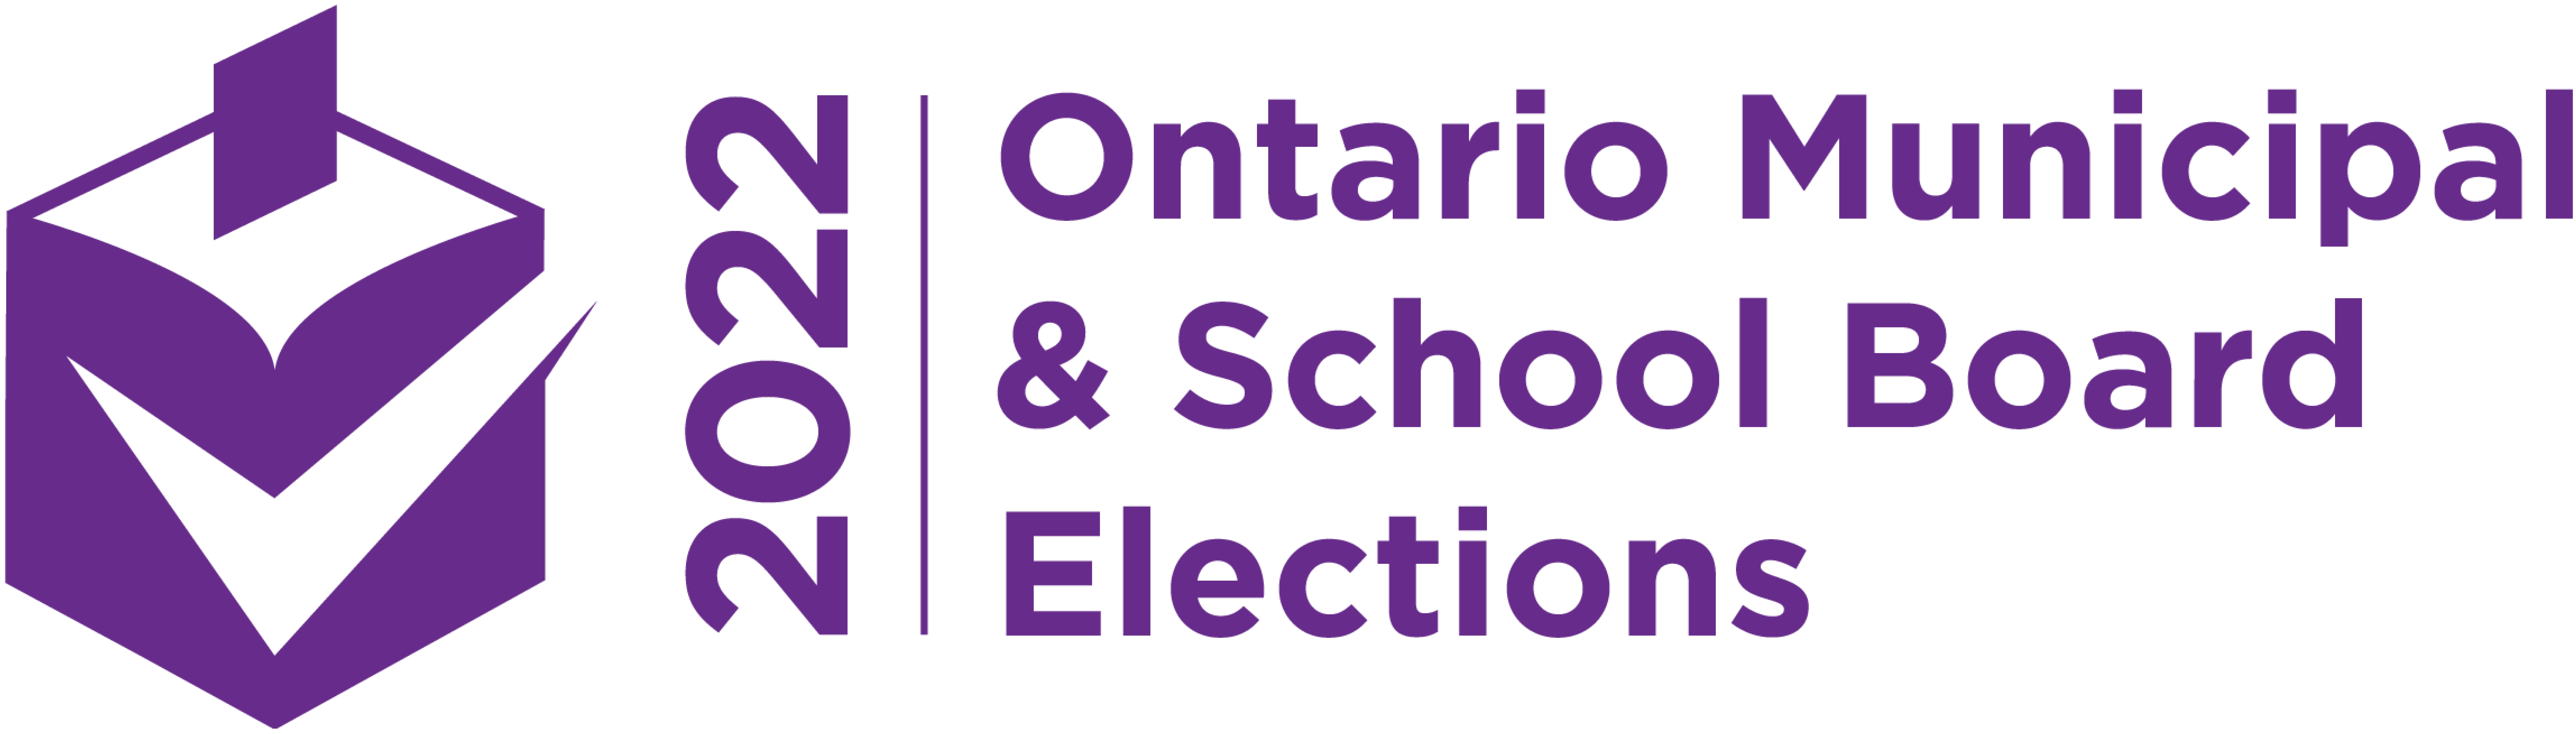 2022 Ontario Municipal & School Board Elections